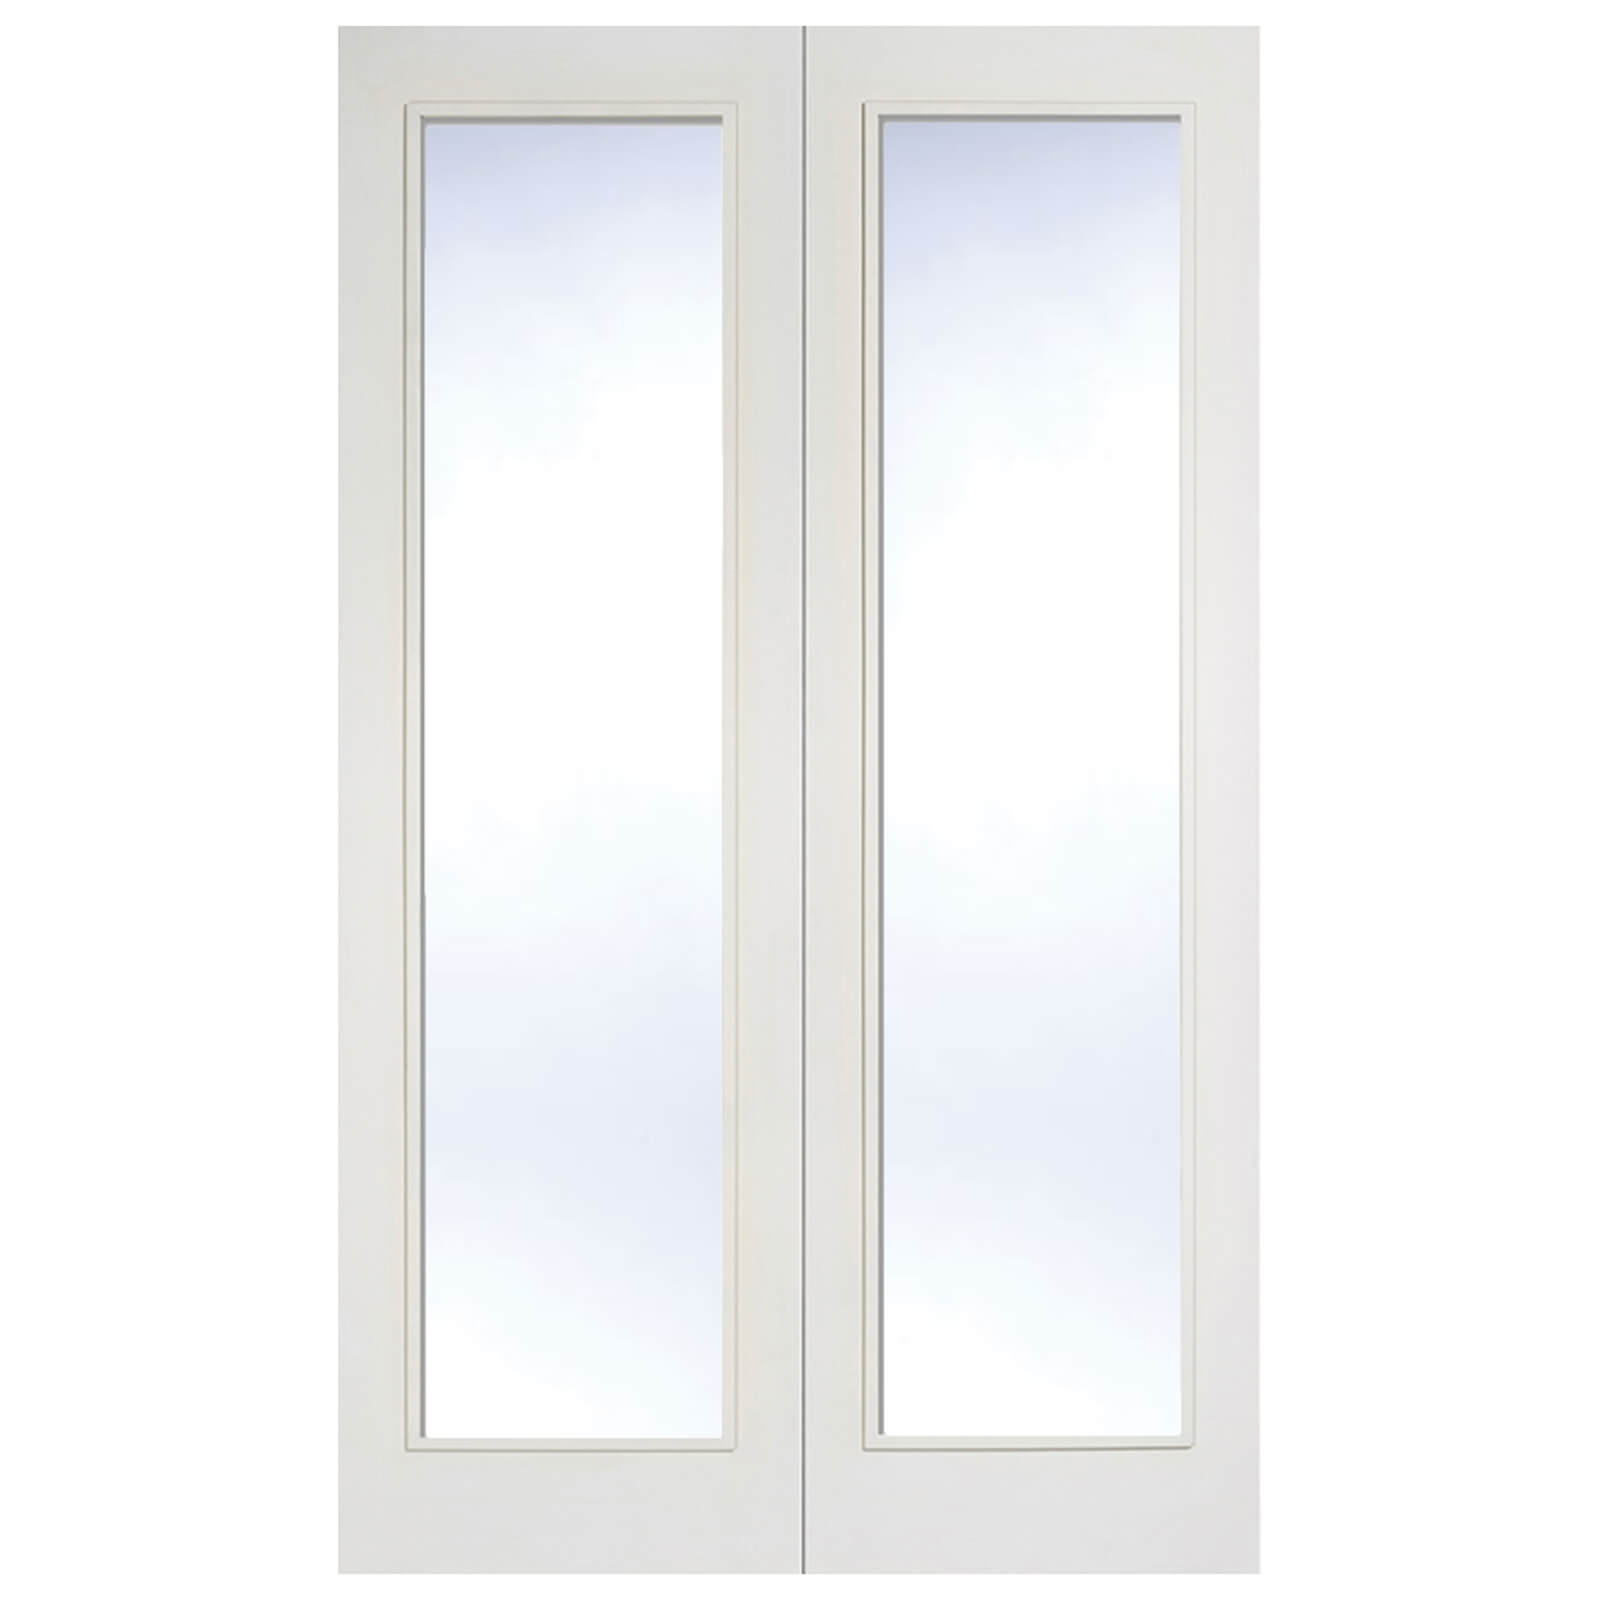 Pattern 20 Internal Glazed Primed White 1 Lite Pair Doors - 1372 x 1981mm